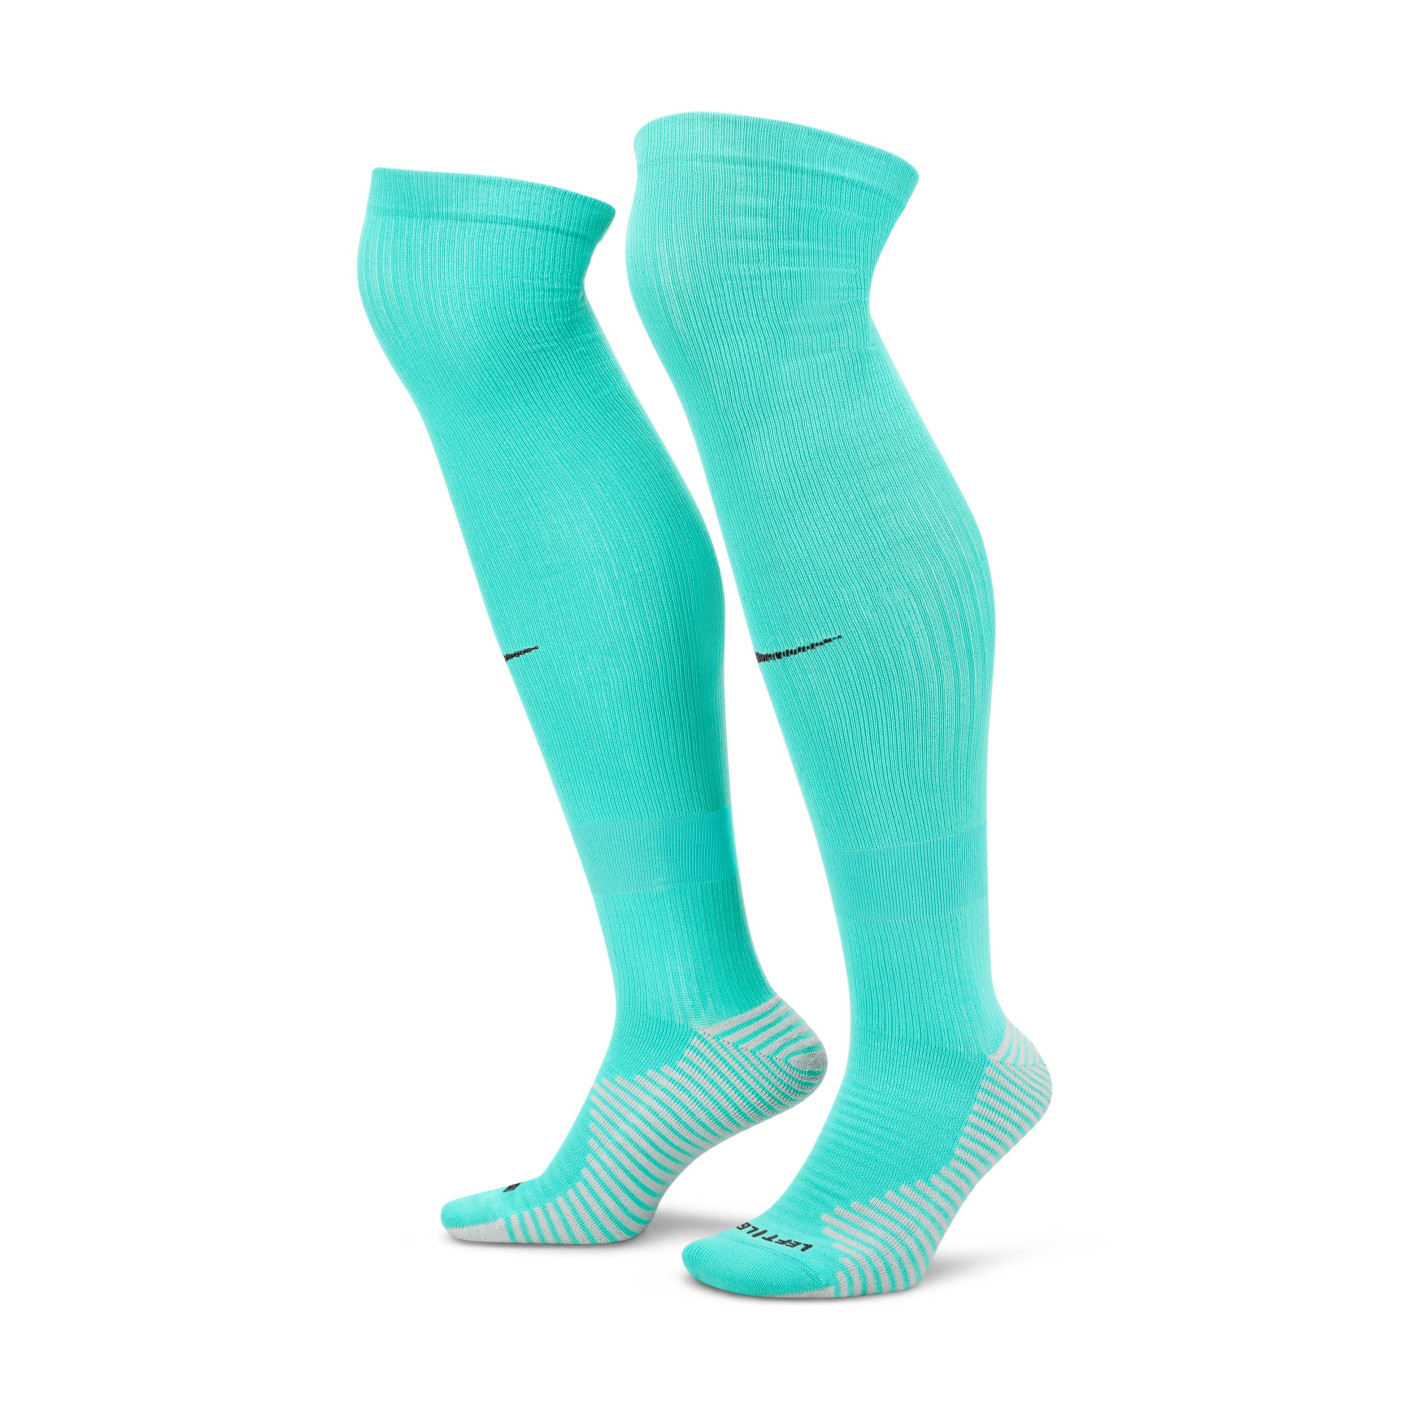 Nike Strike Turquoise Football Socks